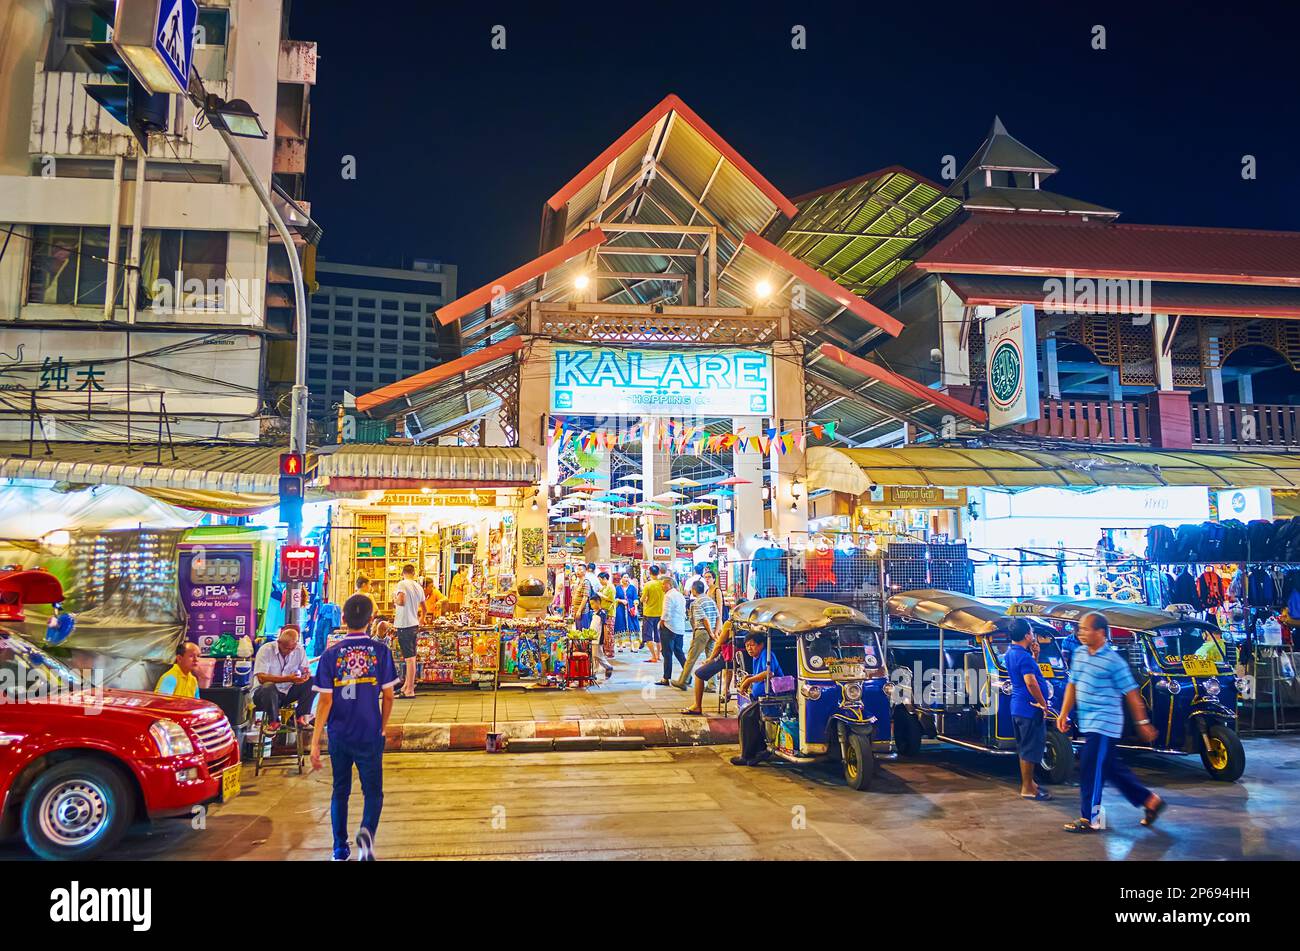 CHIANG MAI, THAILAND - 3. MAI 2019: Beleuchteter Pavillon des Nachtmarkts Kalare mit kleinen Verkaufsständen und geparkten Tuk-Tuk-Taxis im Vordergrund, o Stockfoto